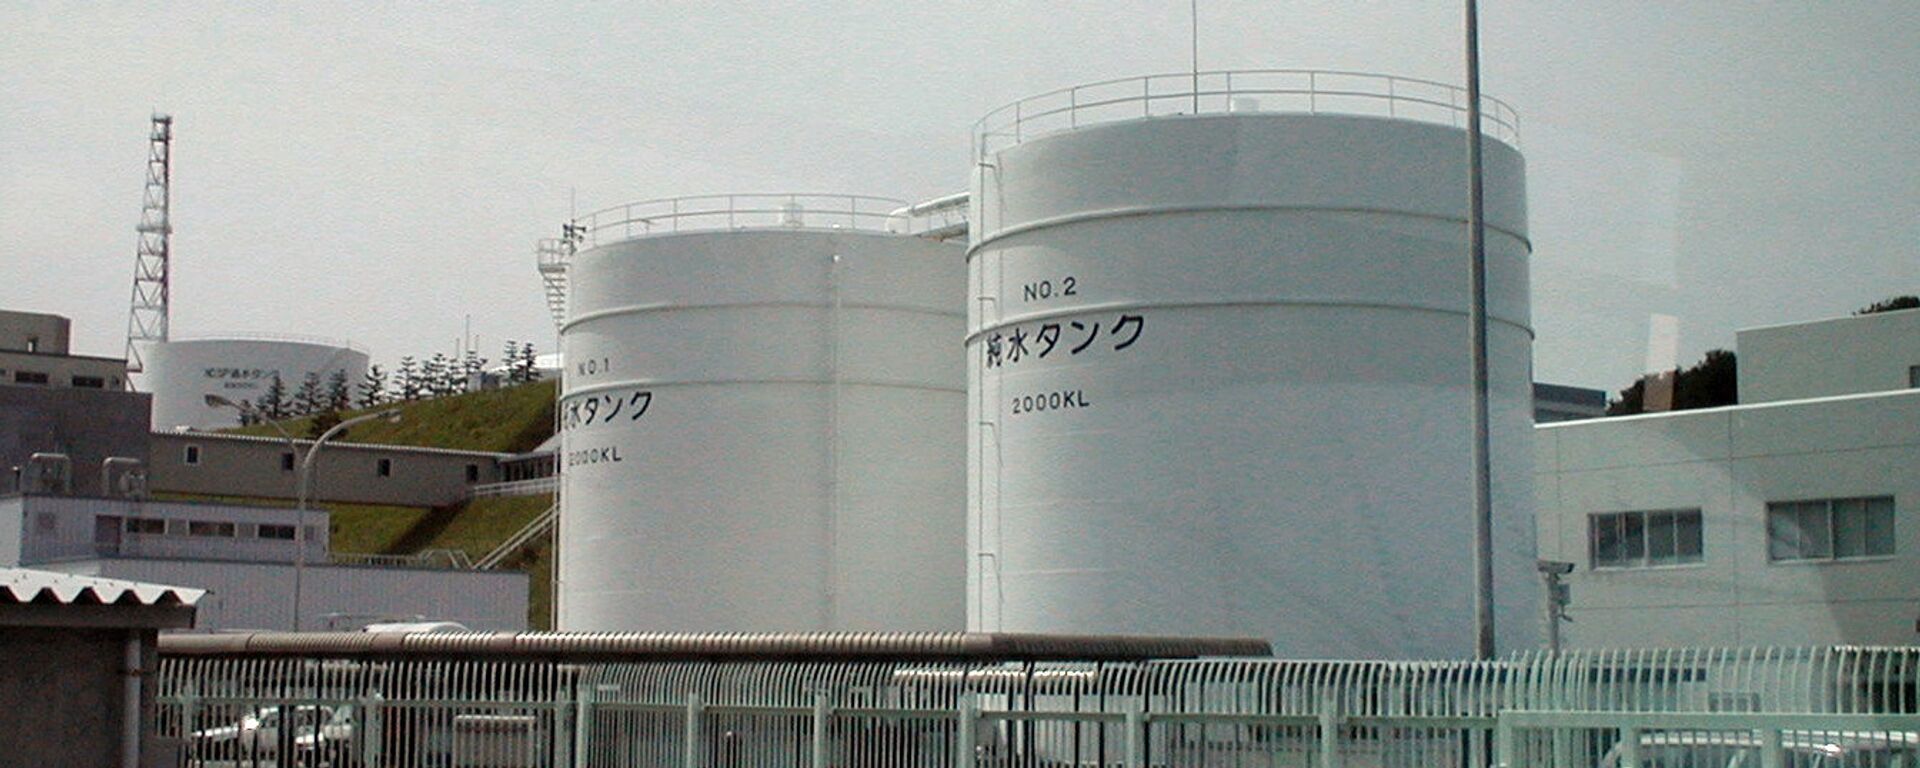 La planta japonesa de Fukushima. - Sputnik Mundo, 1920, 13.04.2021